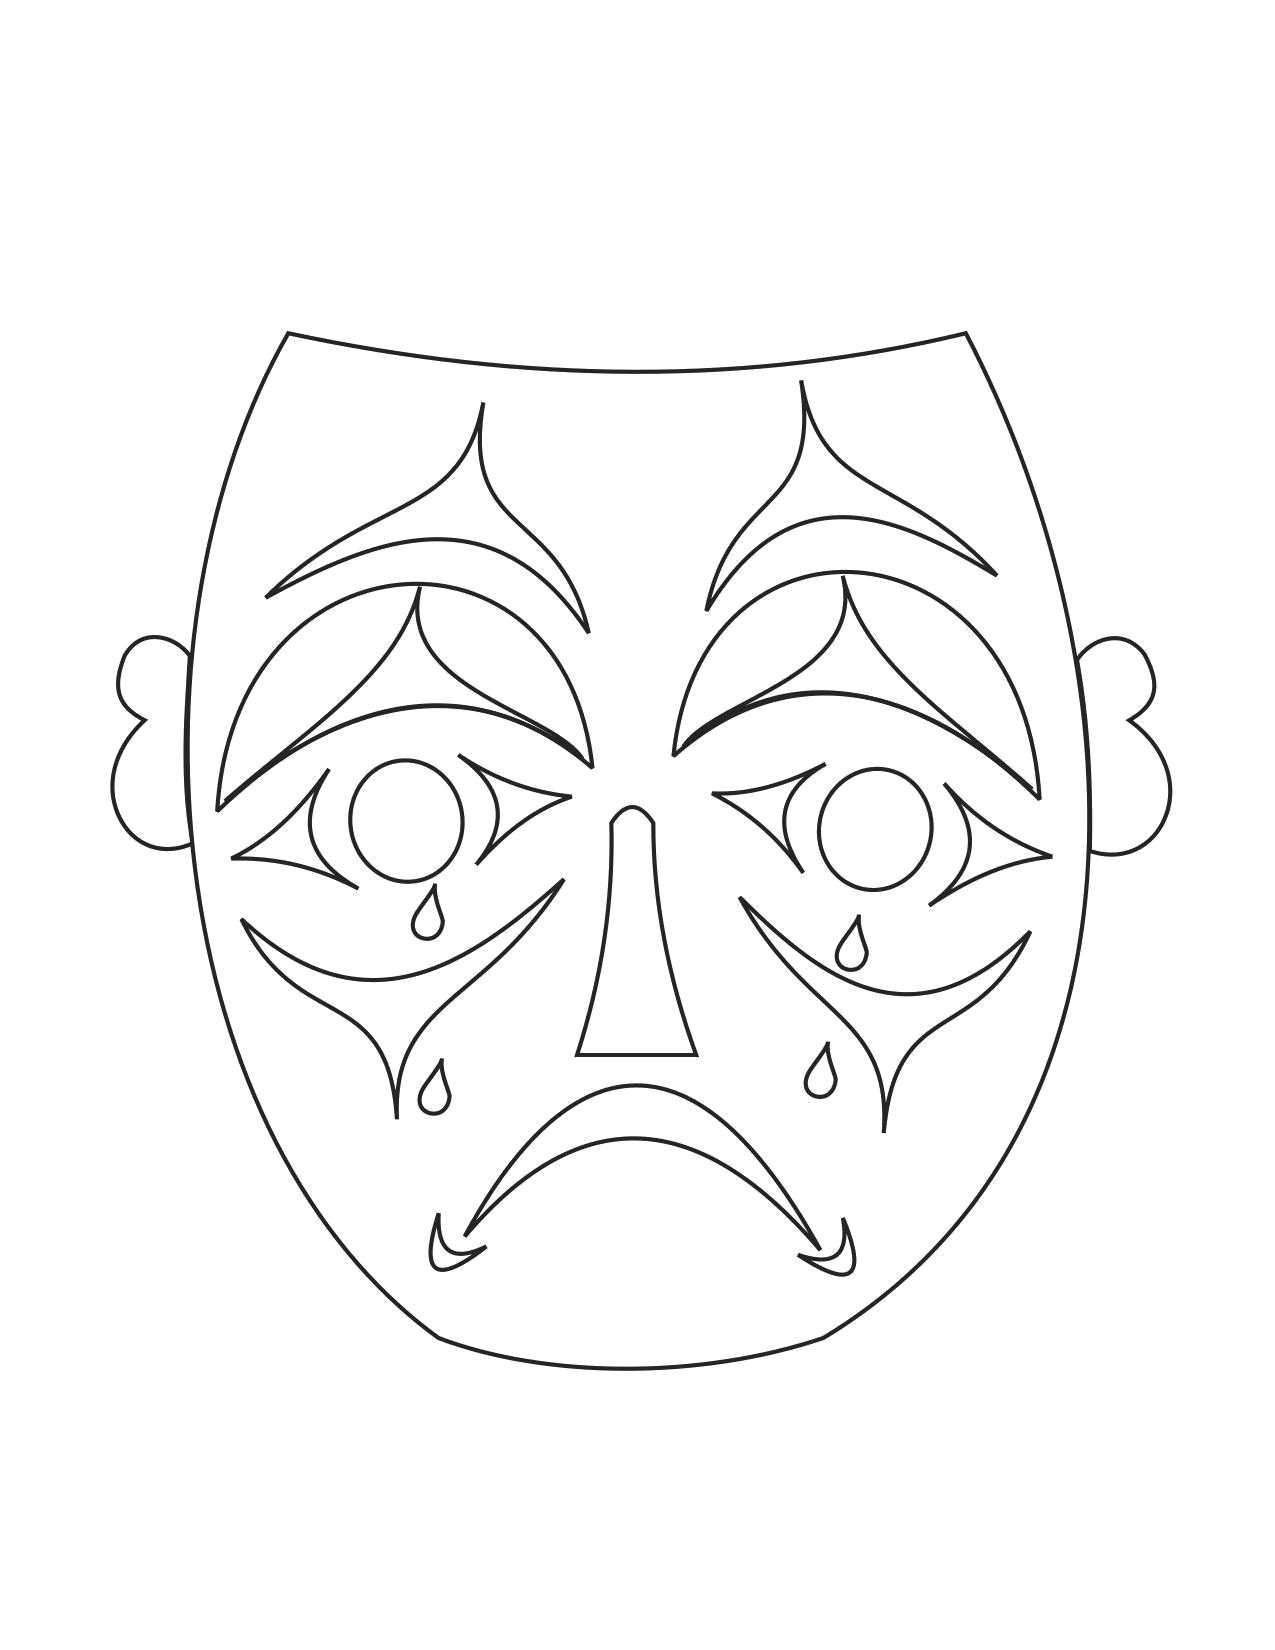 Театральная маска для печати. Маска. Трафарет маски для лица. Трафареты театральных масок для лица. Театральная маска раскраска.